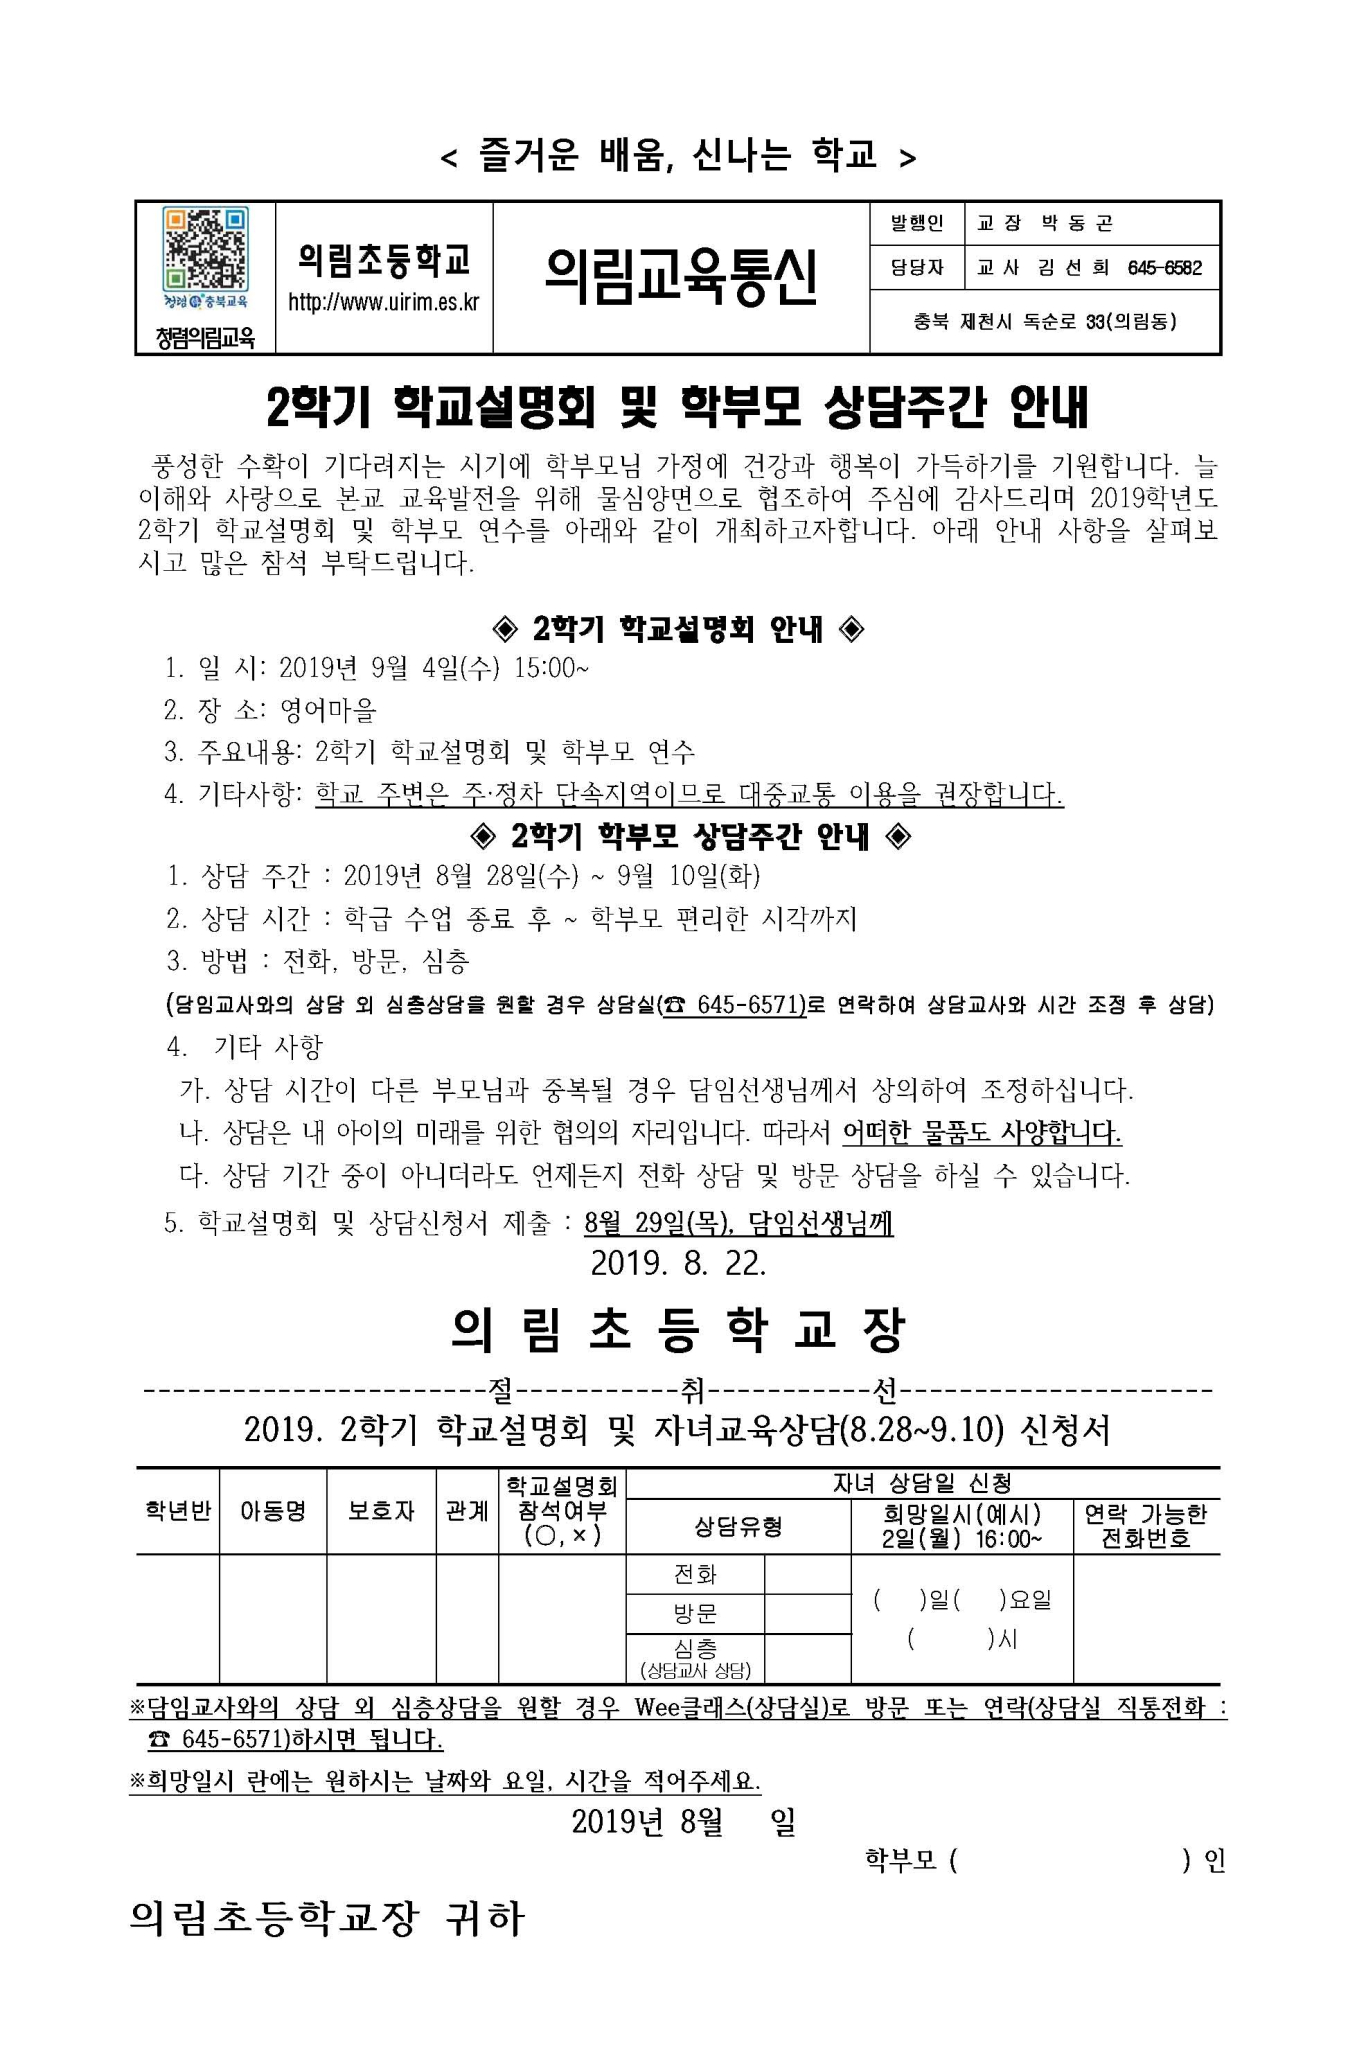 2019. 2학기 학교설명회 계획_페이지_2